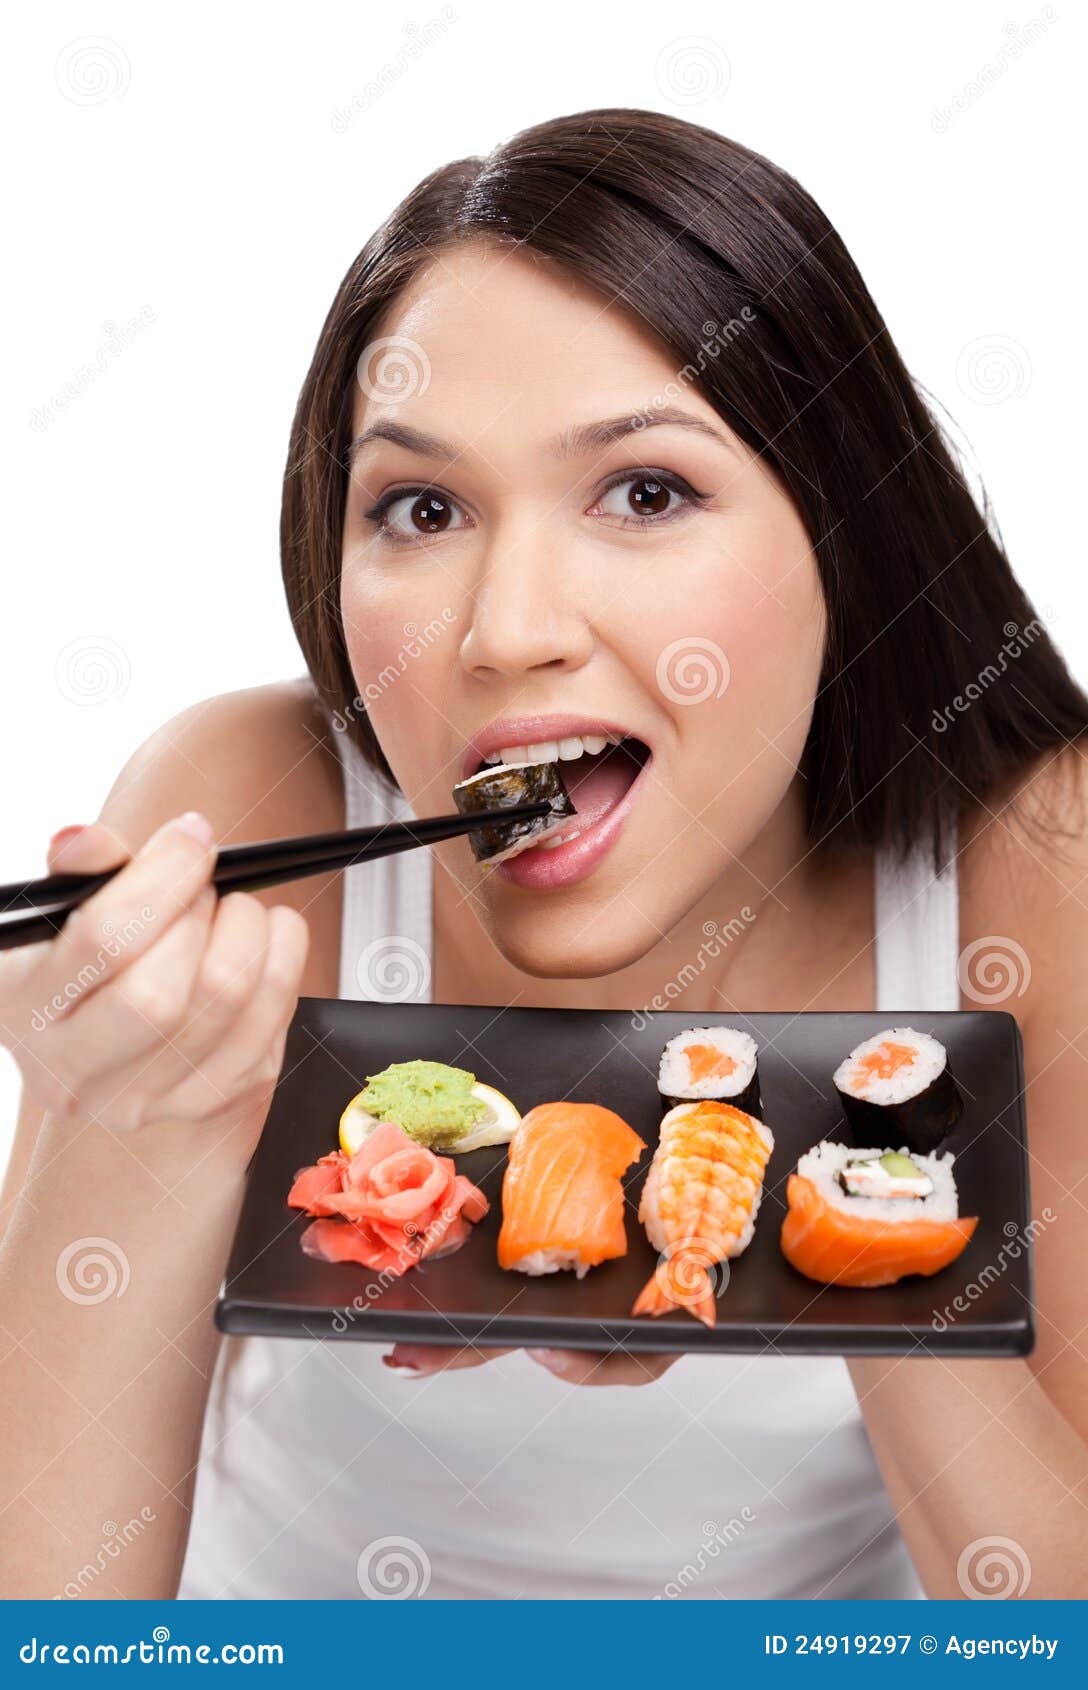 吃nigiri寿司的秀丽式样女孩 库存照片. 图片 包括有 突然移动, 设计, 食物, 投反对票, 方式 - 57234804